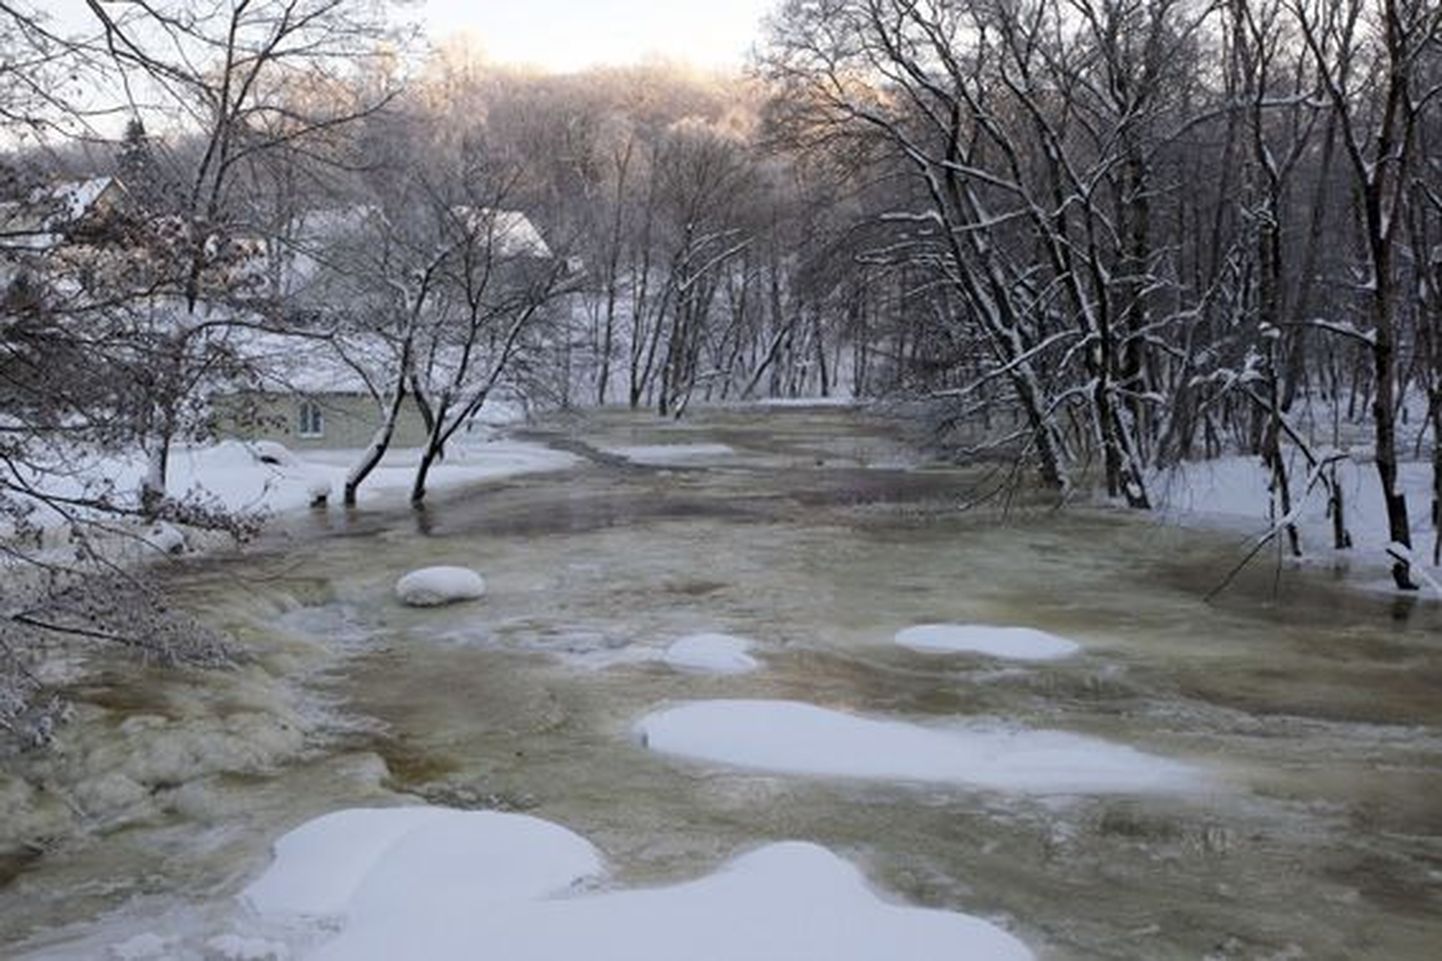 Kunda jõgi kipub talviti üle kallaste tõusma.